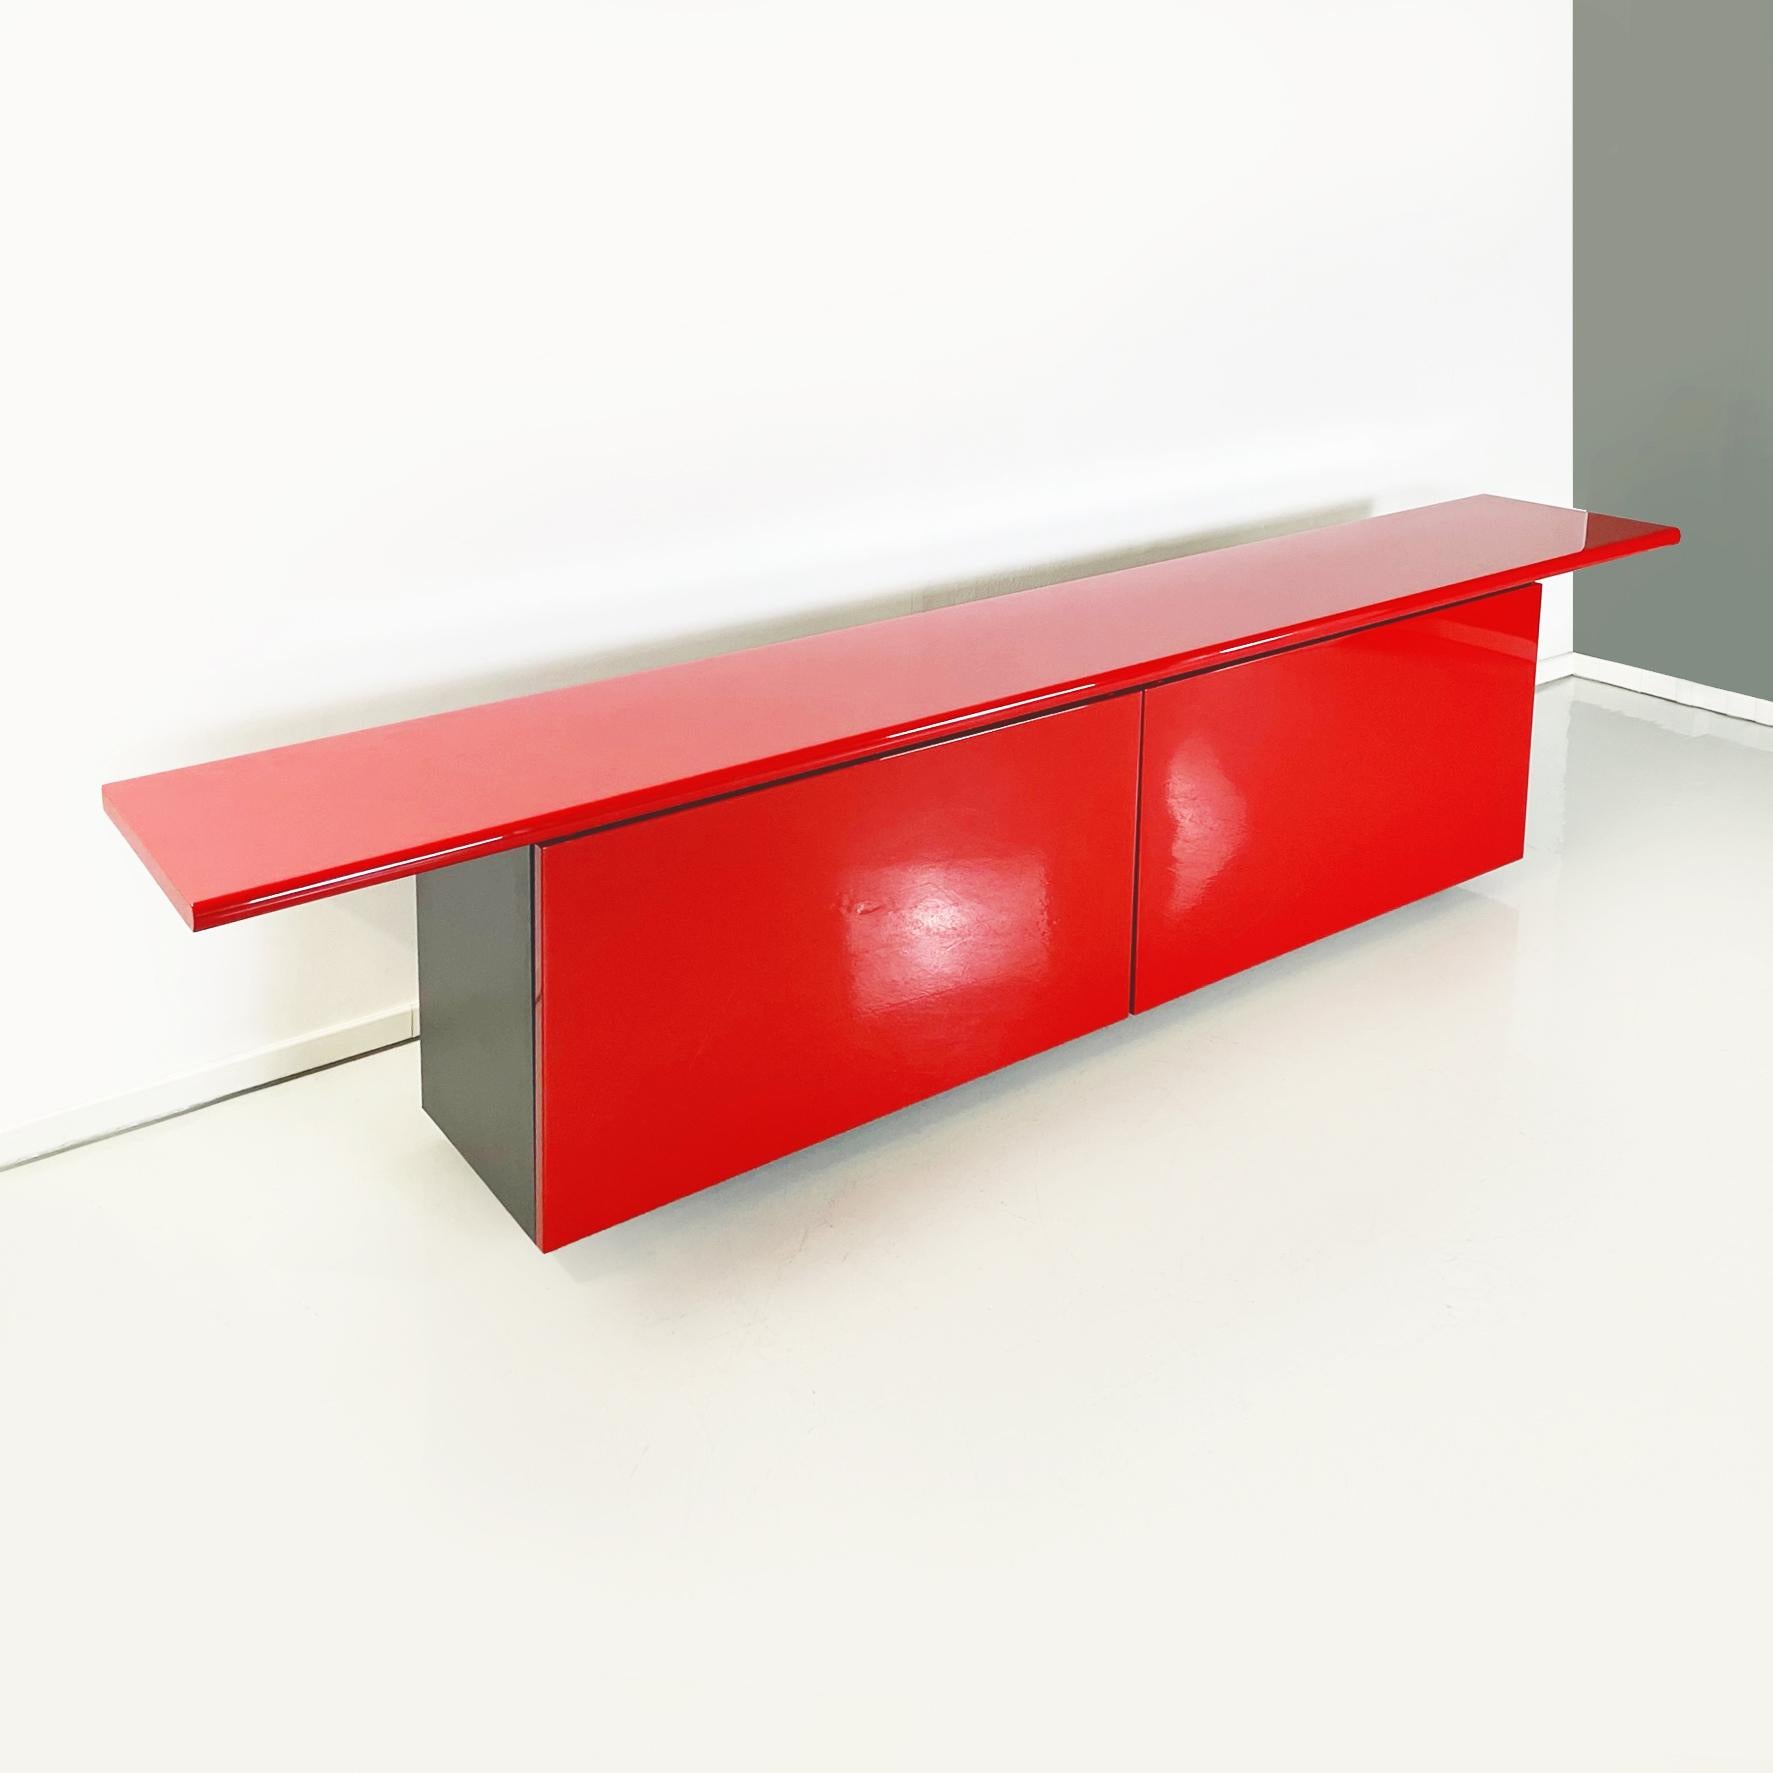 Rote Anrichte Sheraton, italienische Moderne, von Giotto Stoppino und Lodovico Acerbis für Acerbis, 1977
Anrichte mod. Sheraton aus glänzend lackiertem Holz in leuchtendem Rot und Schwarz. Die rechteckige Platte hat eine abgeschrägte Vorderkante.